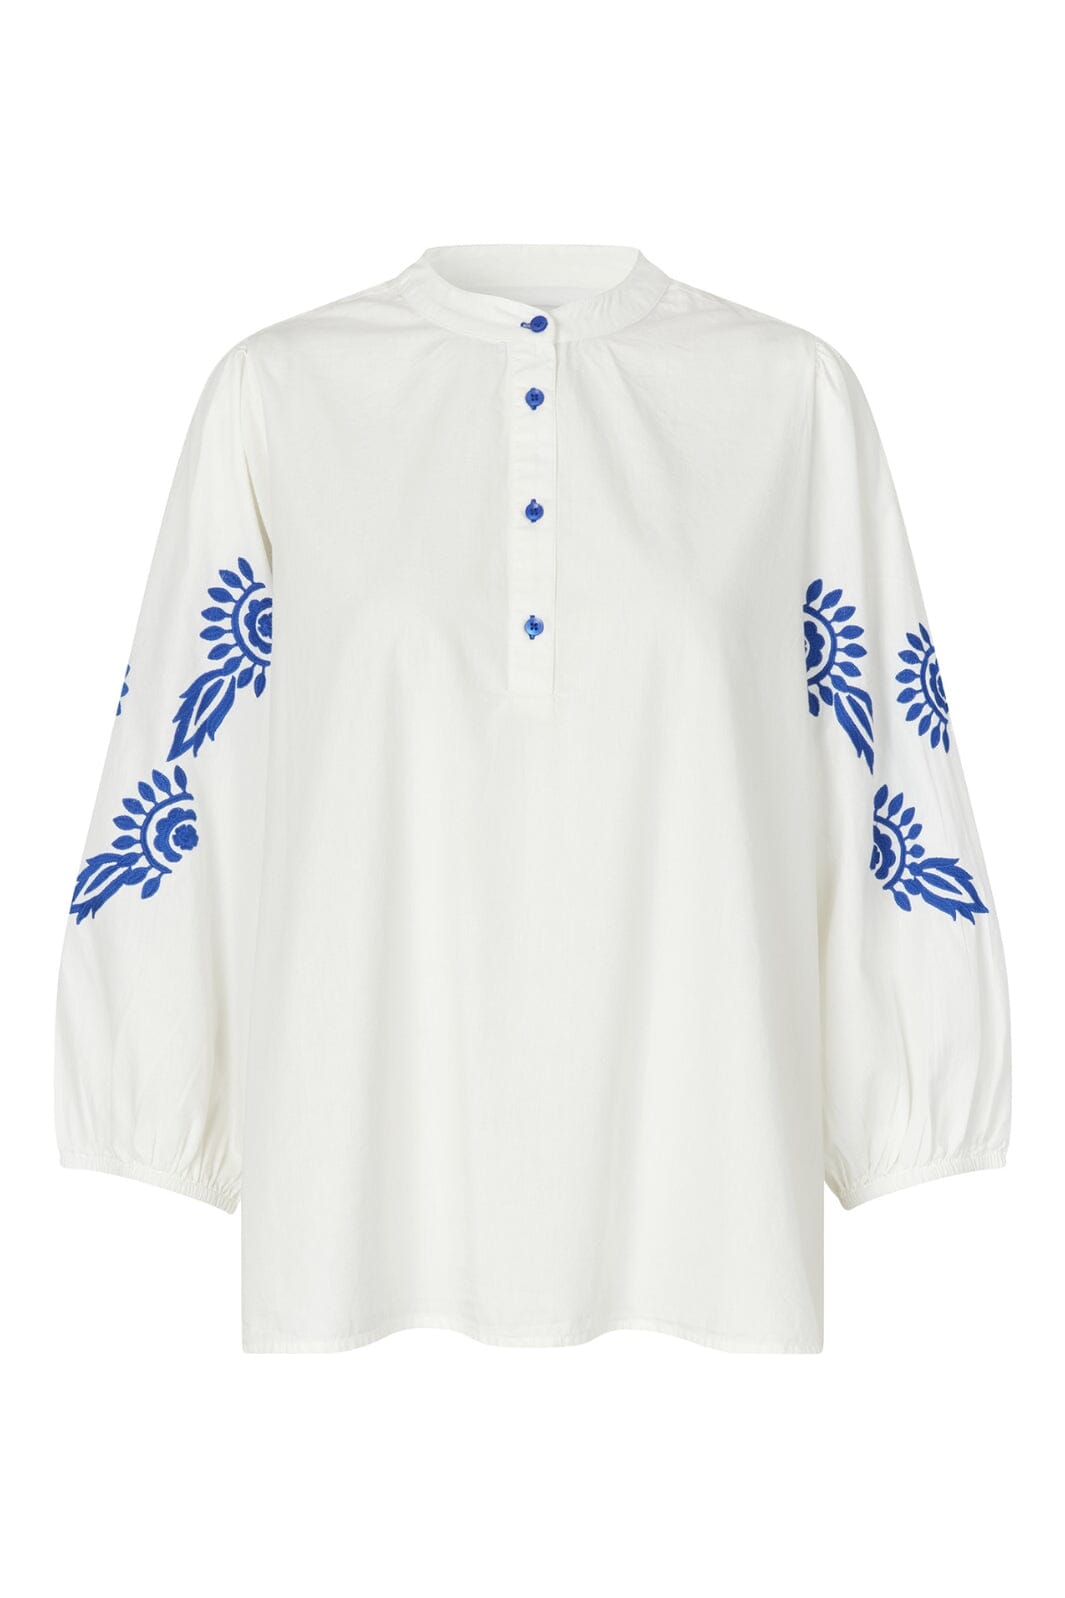 Lollys Laundry - FaithLL Blouse LS - 01 White Skjorter 